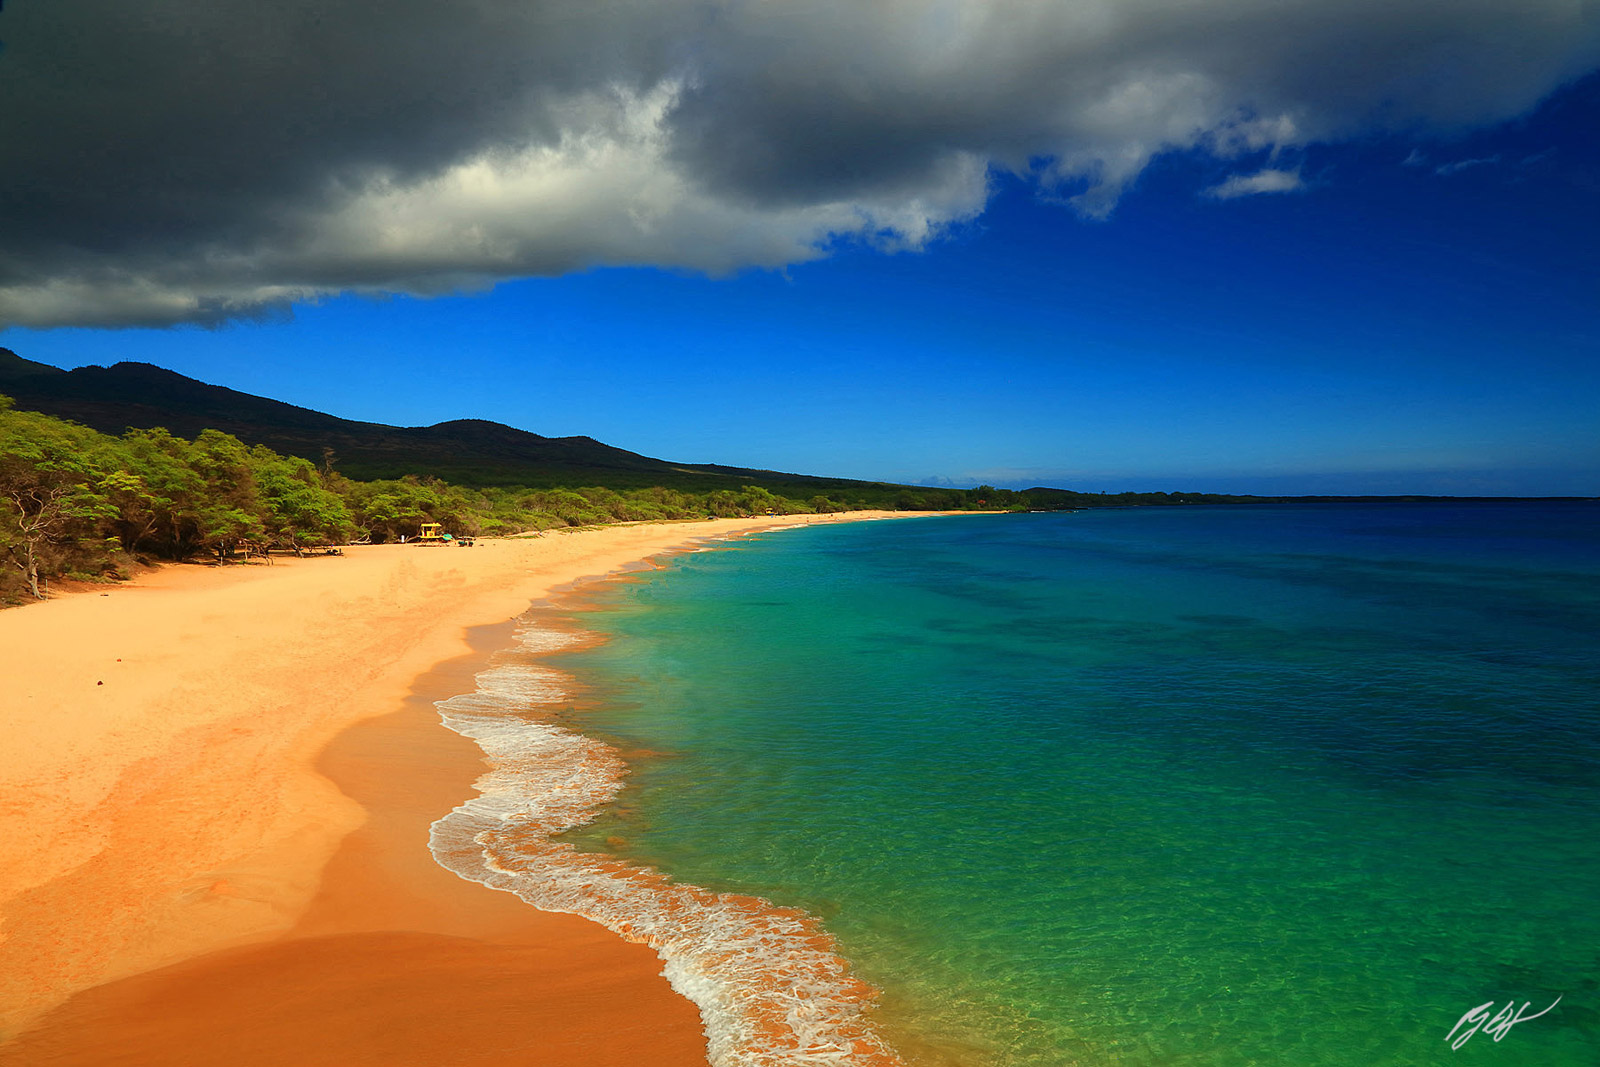 Big Beach on the Island of Maui in the Hawaiian Islands